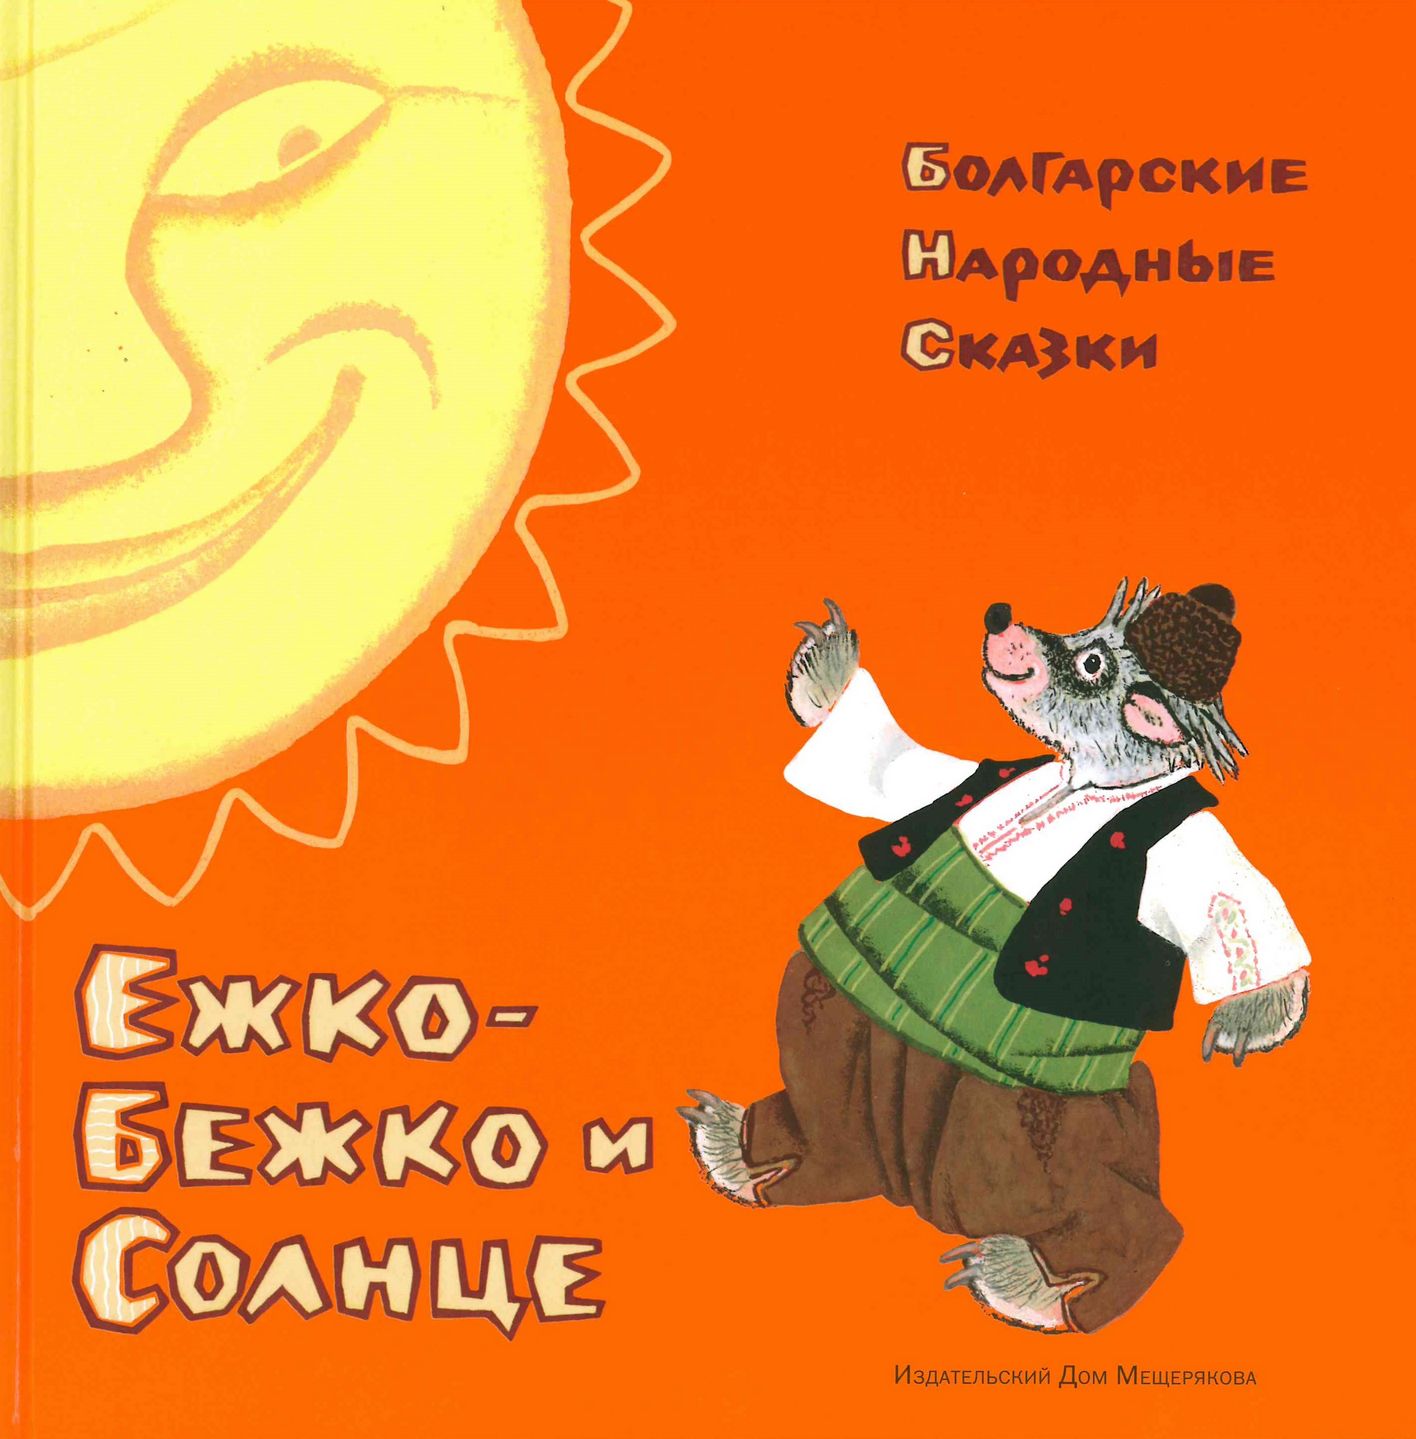  Ежко-Бежко и Солнце: болгарские народные сказки